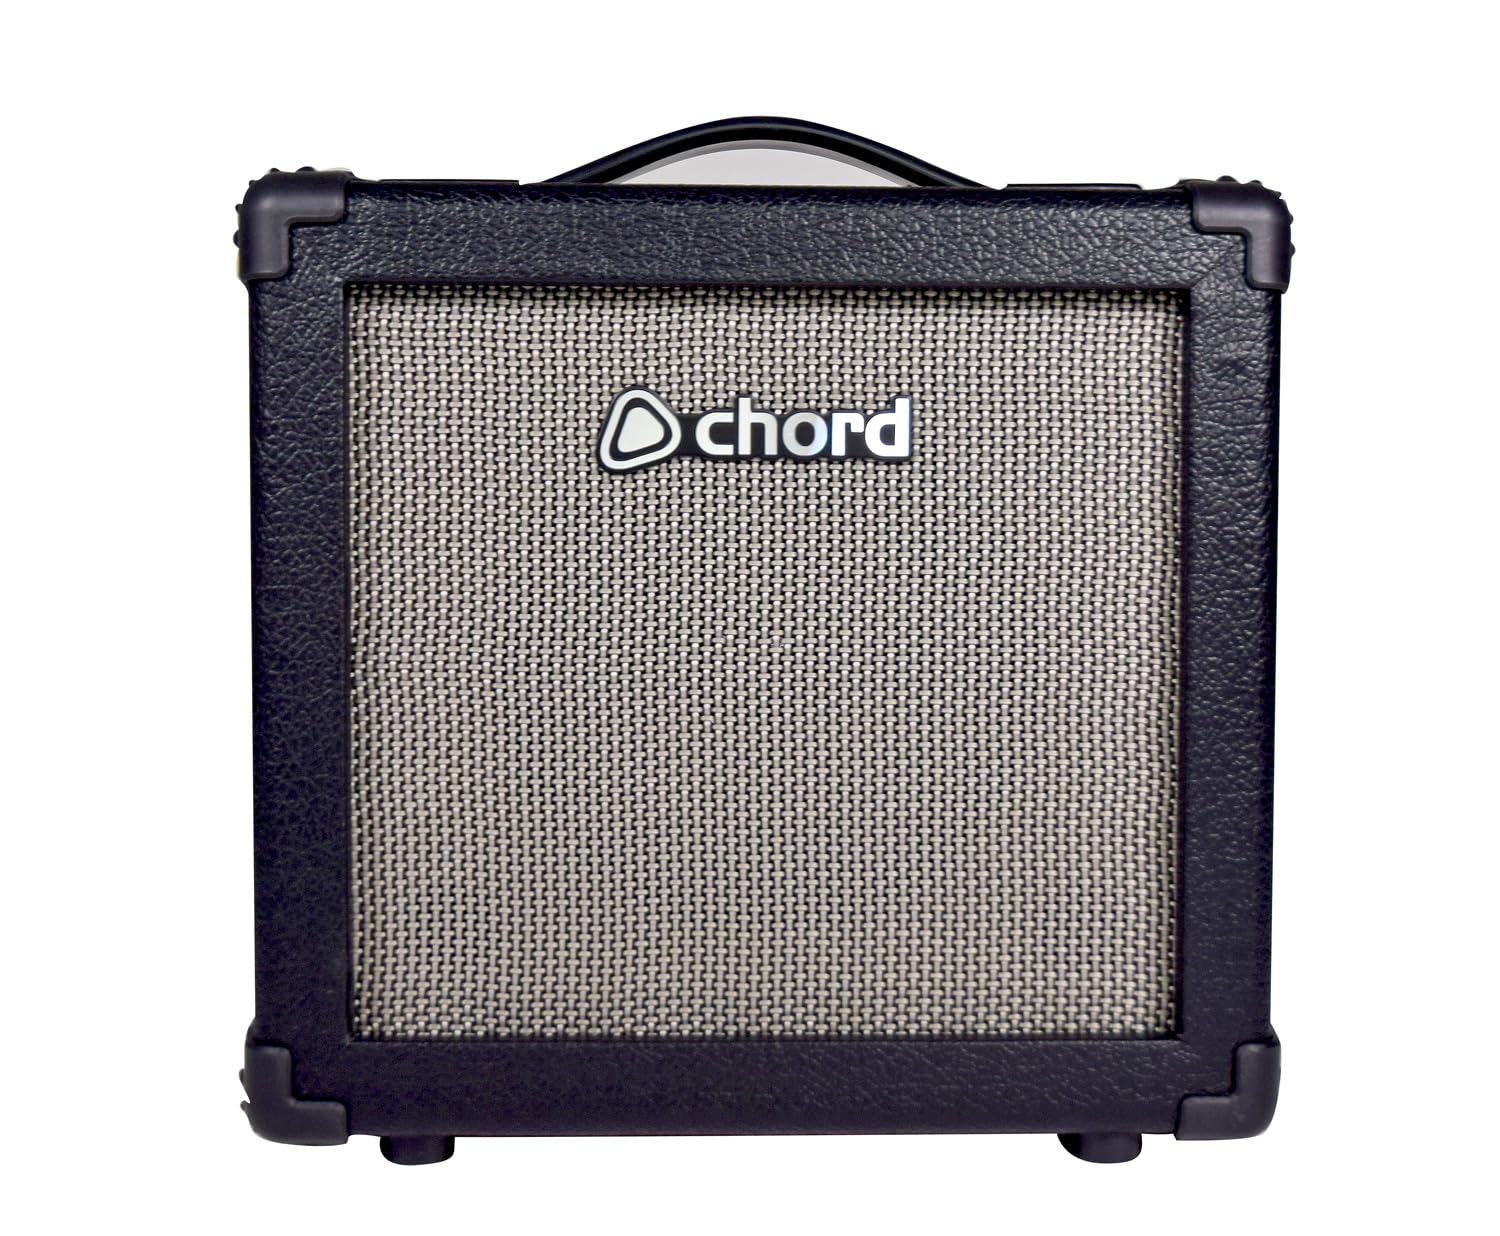 Chord | Maßgeschneiderter Bassgitarrenverstärker mit 3-Band-EQ und Bluetooth-Konnektivität | 15 W